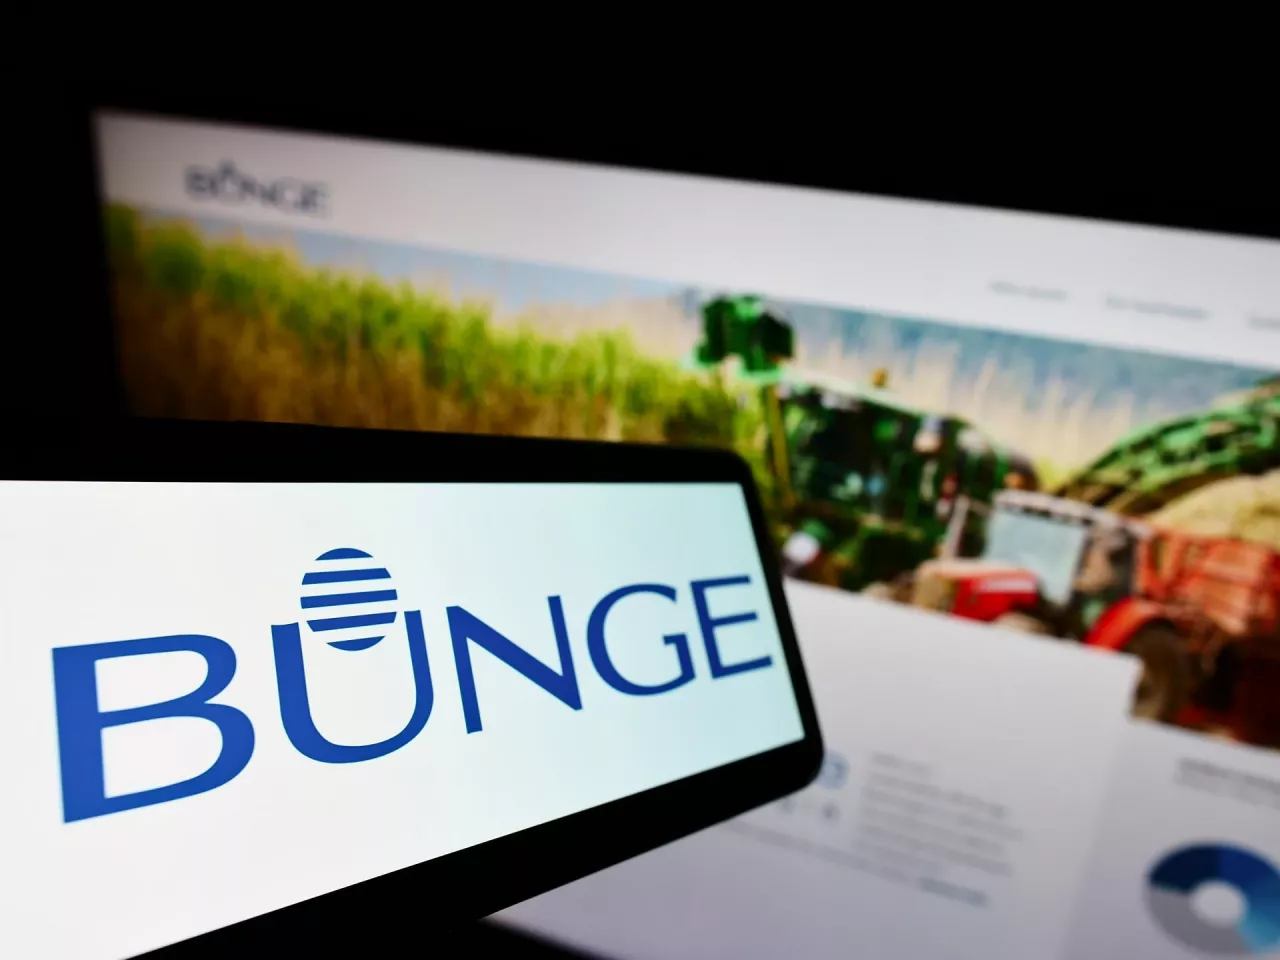 Komisja Europejska zglasza zastrzeżenia do fuzji koncernu Bunge (producenta oleju marki Kujawski) z firmą Viterra (fot. Shutterstock)